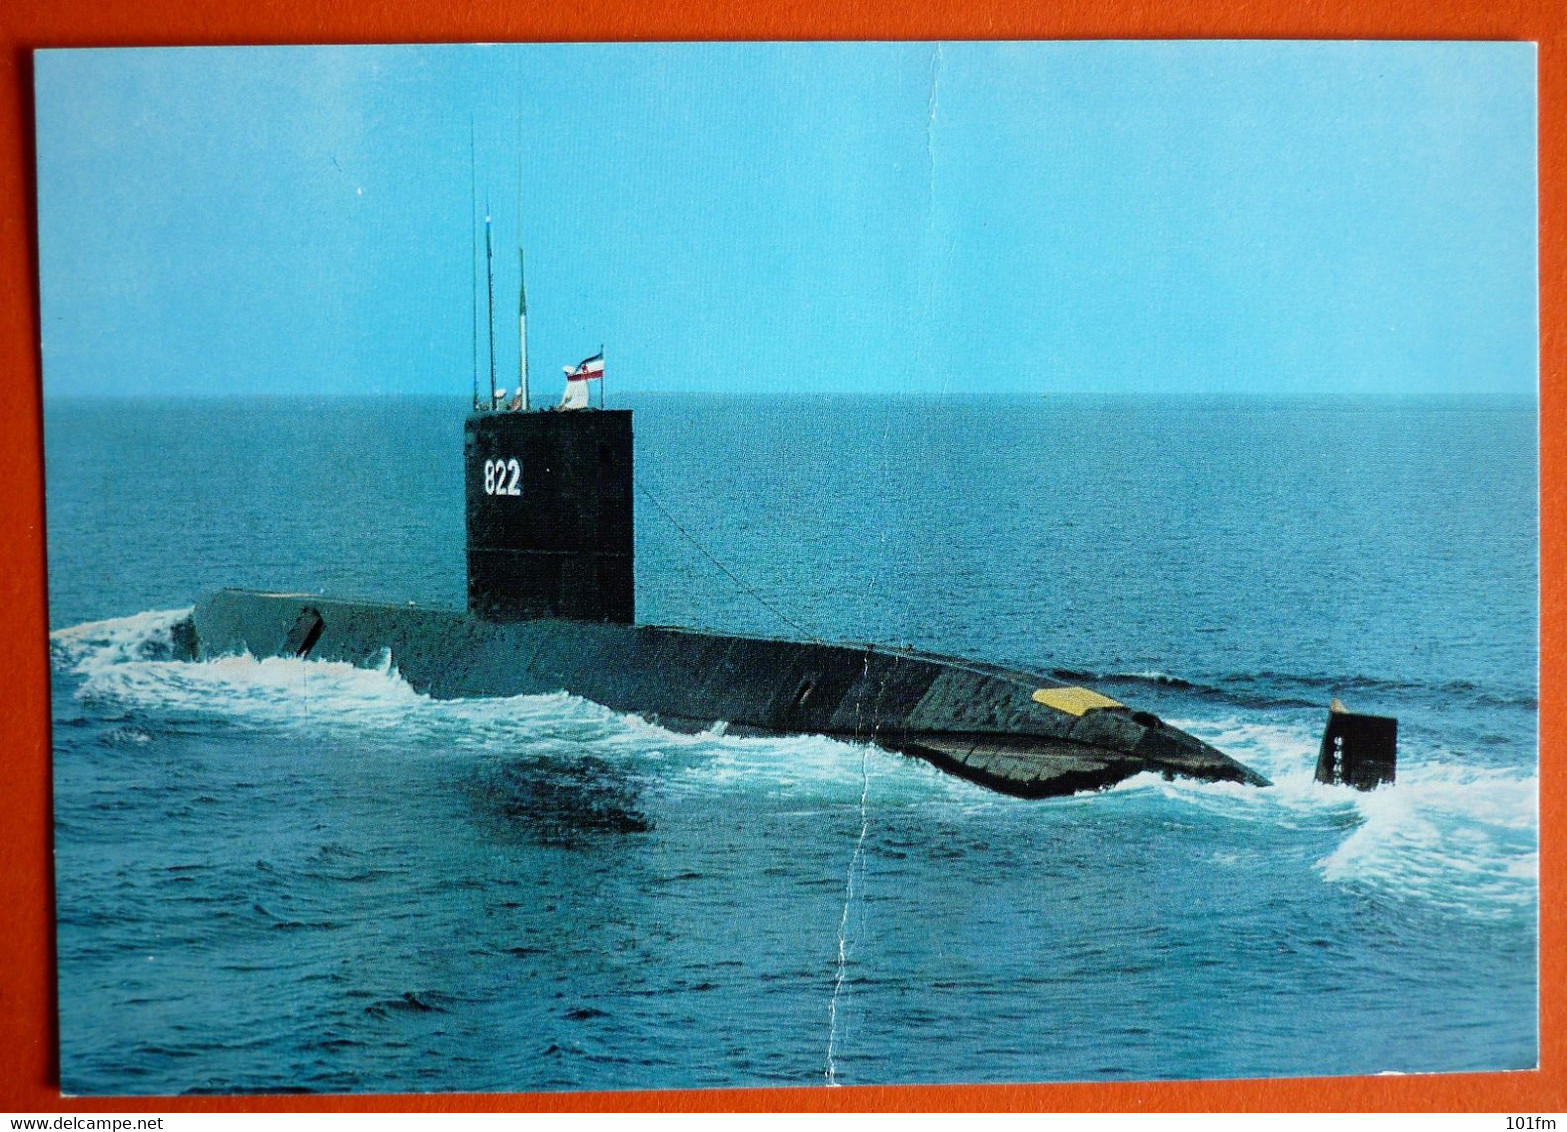 YUGOSLAVIA - SUBMARINE 822 "JUNAK" - Submarines